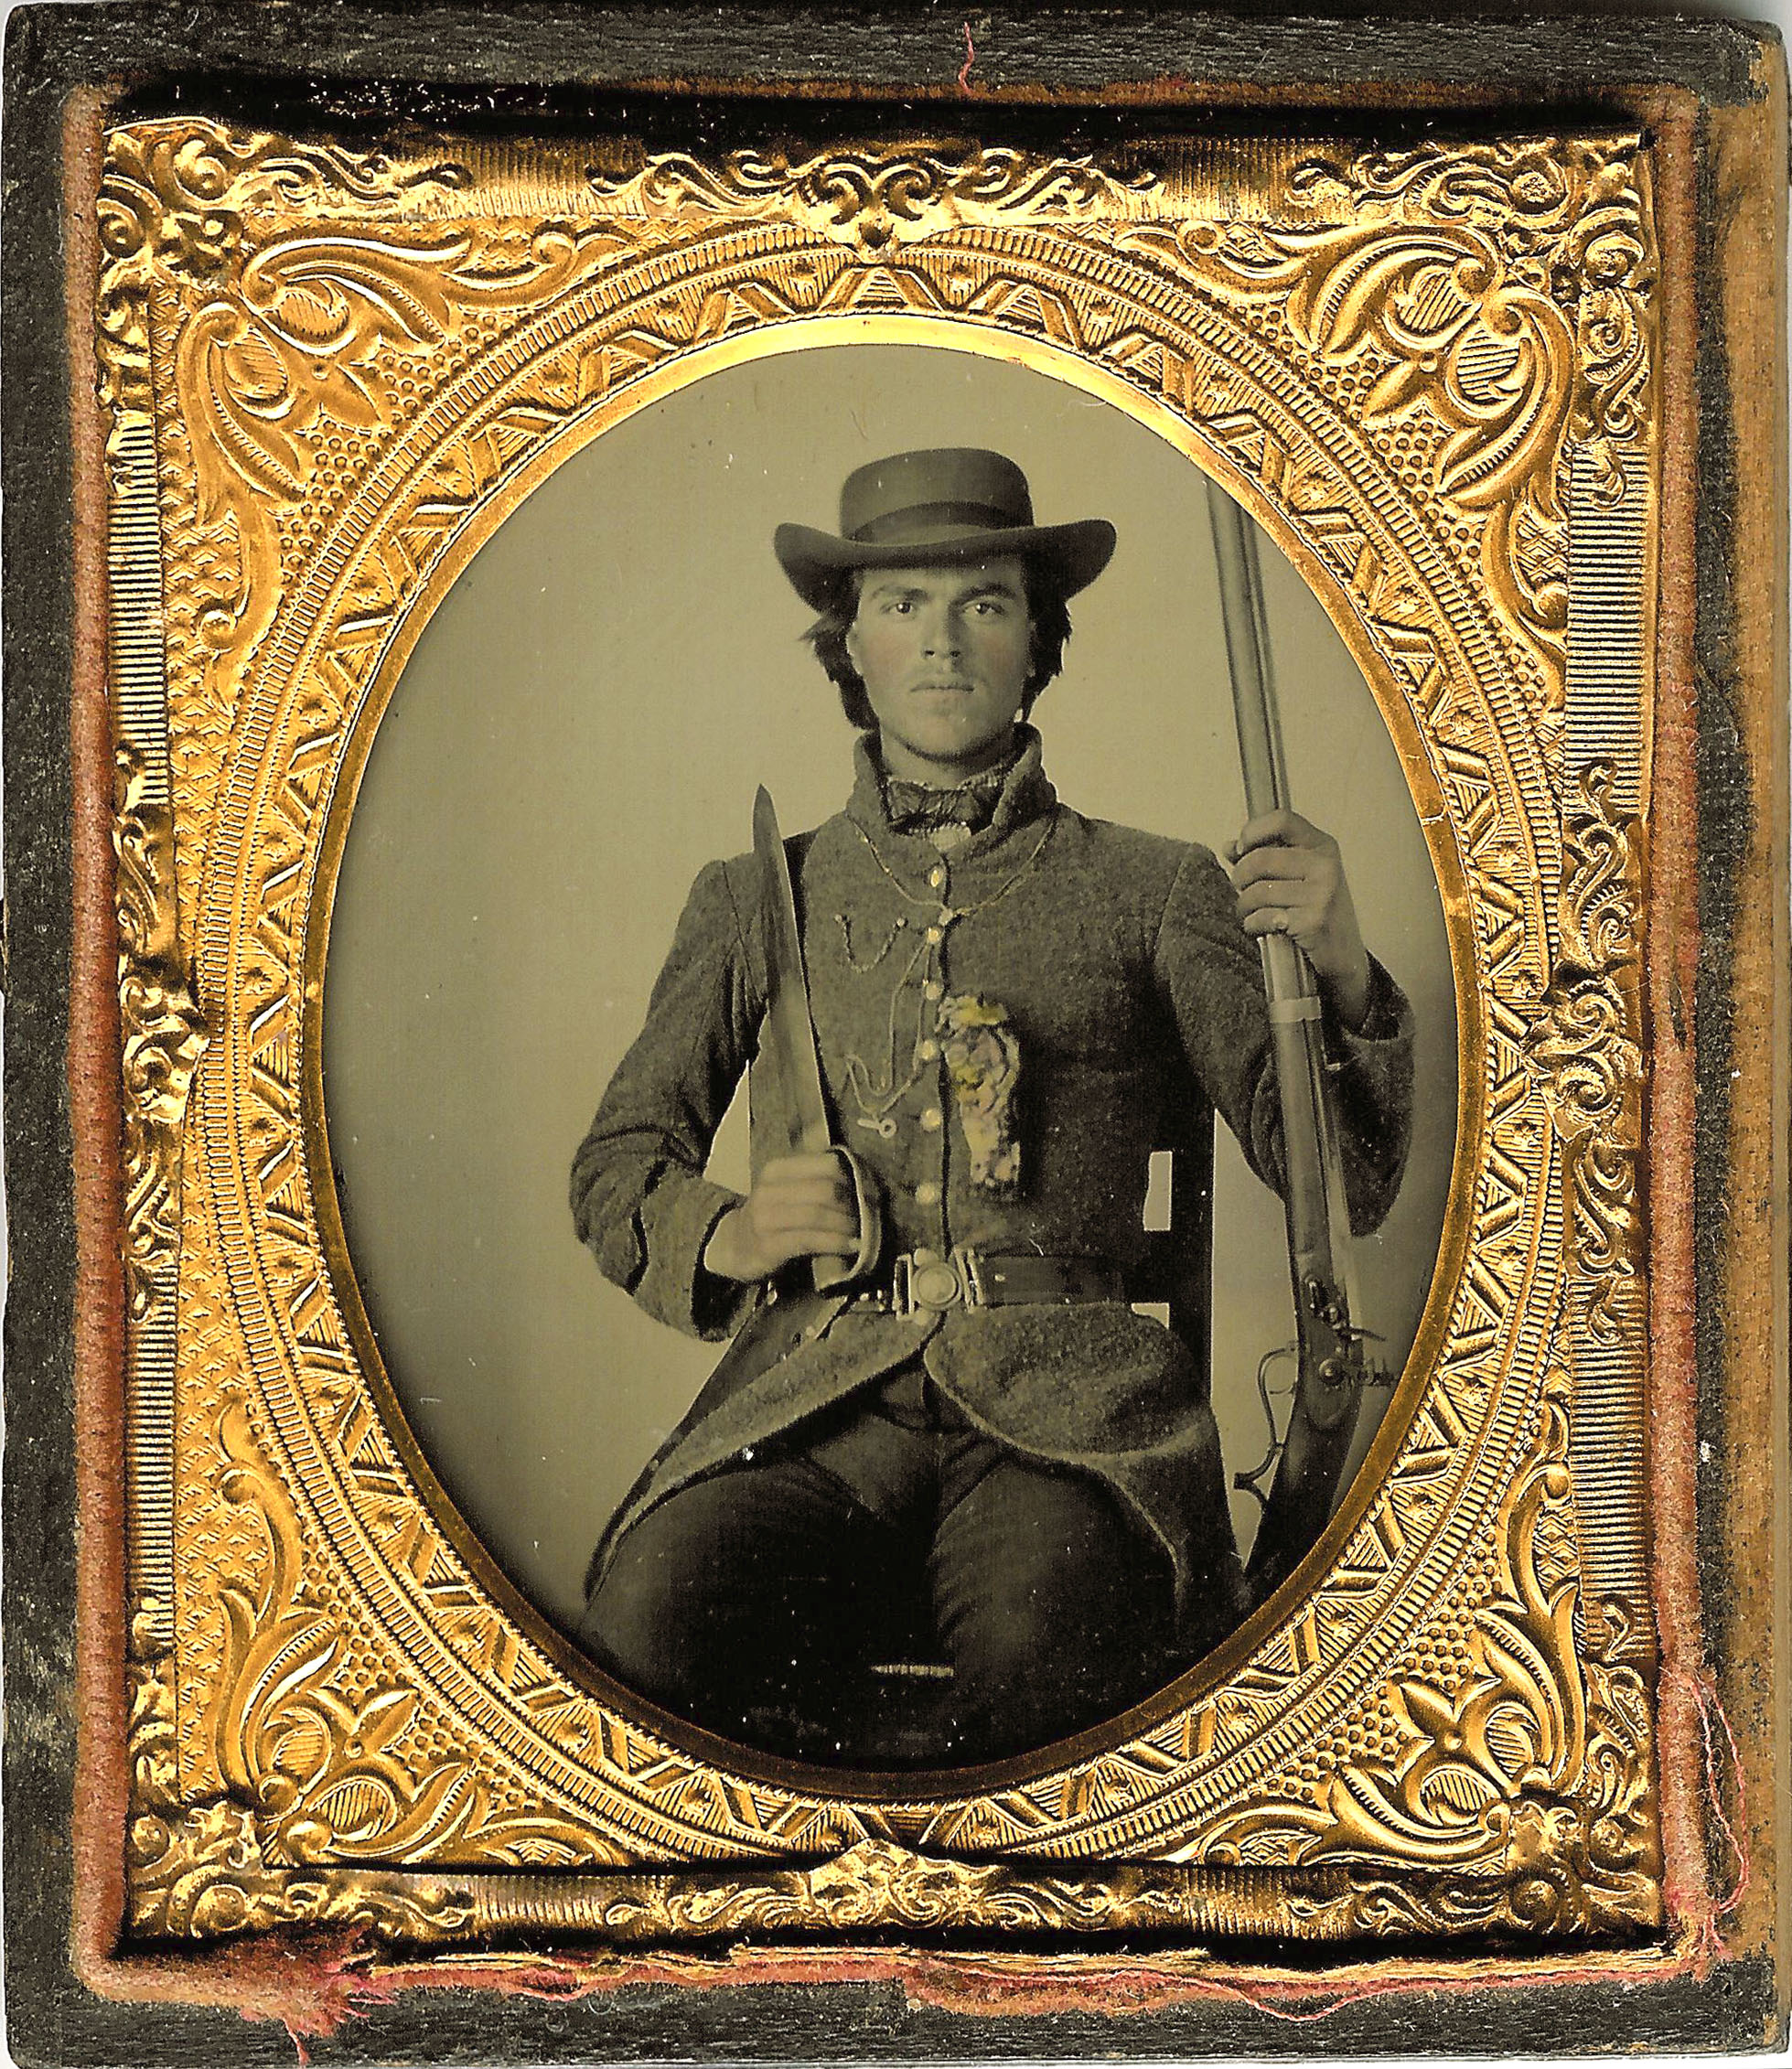 Civil War Photos and Relics